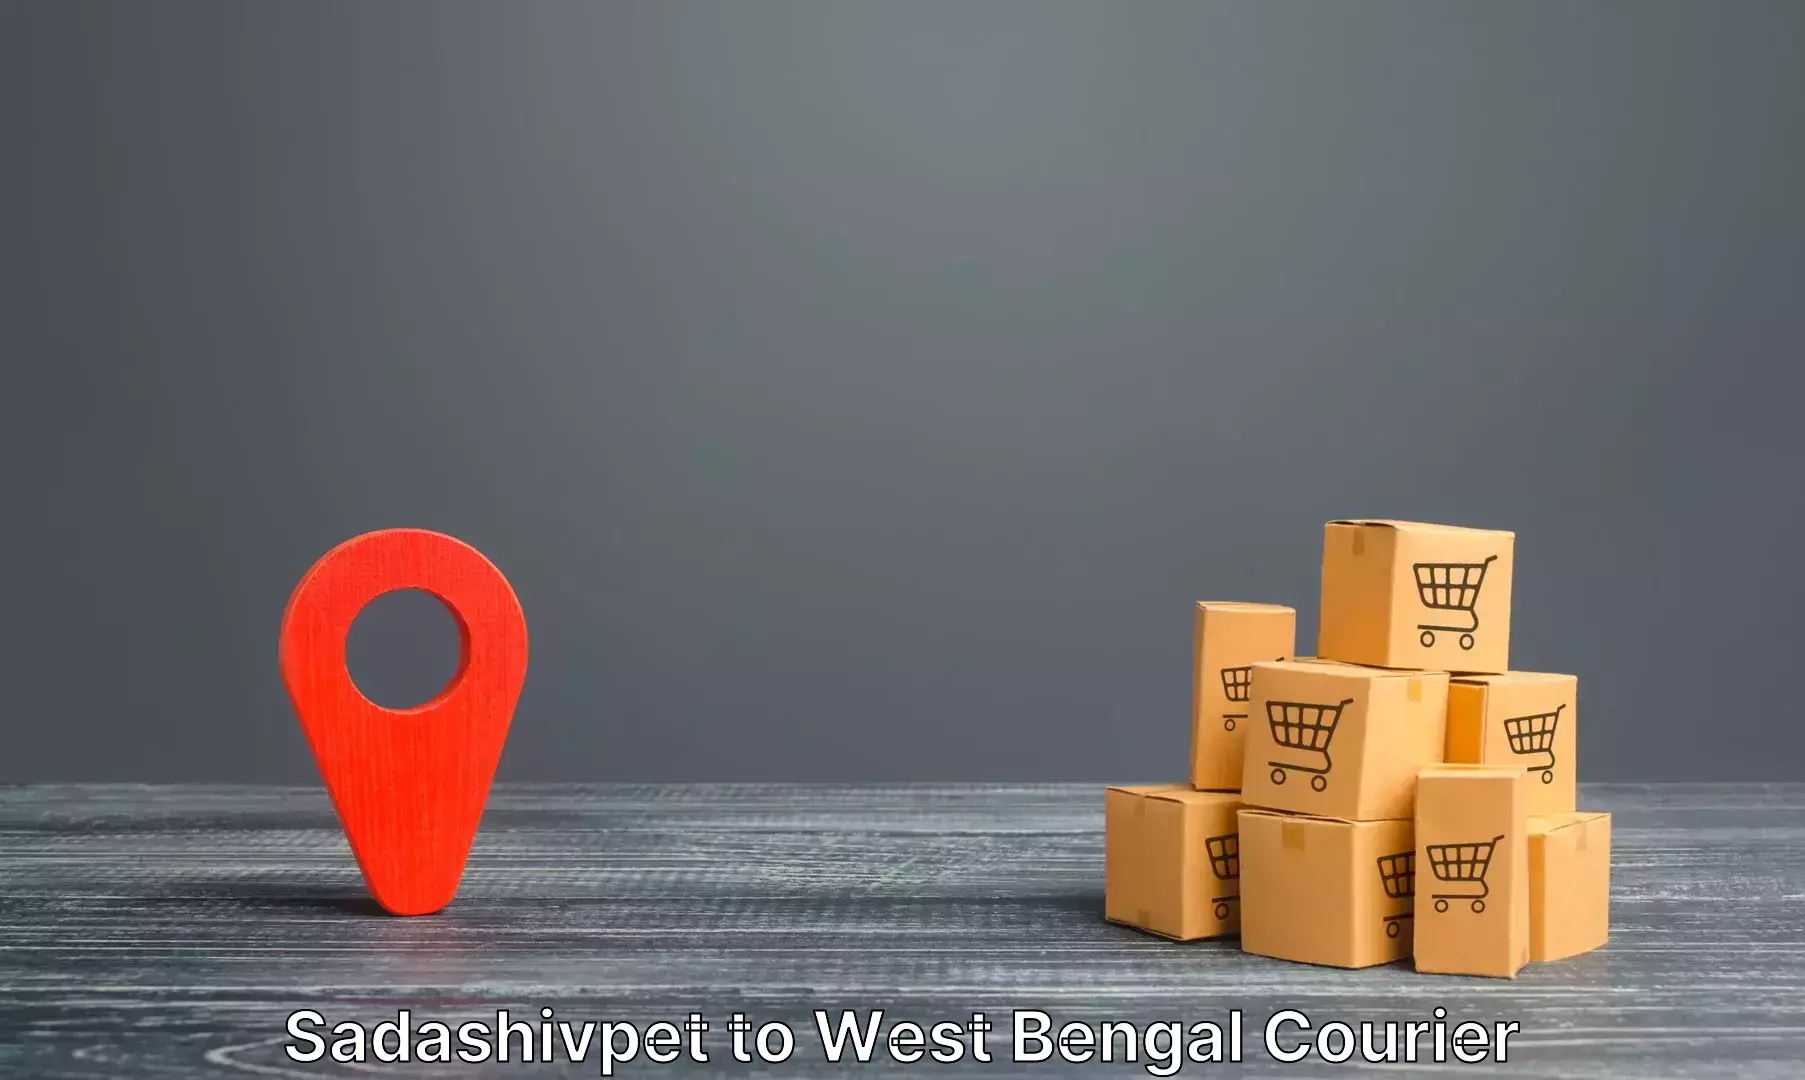 Luggage transport company Sadashivpet to West Bengal